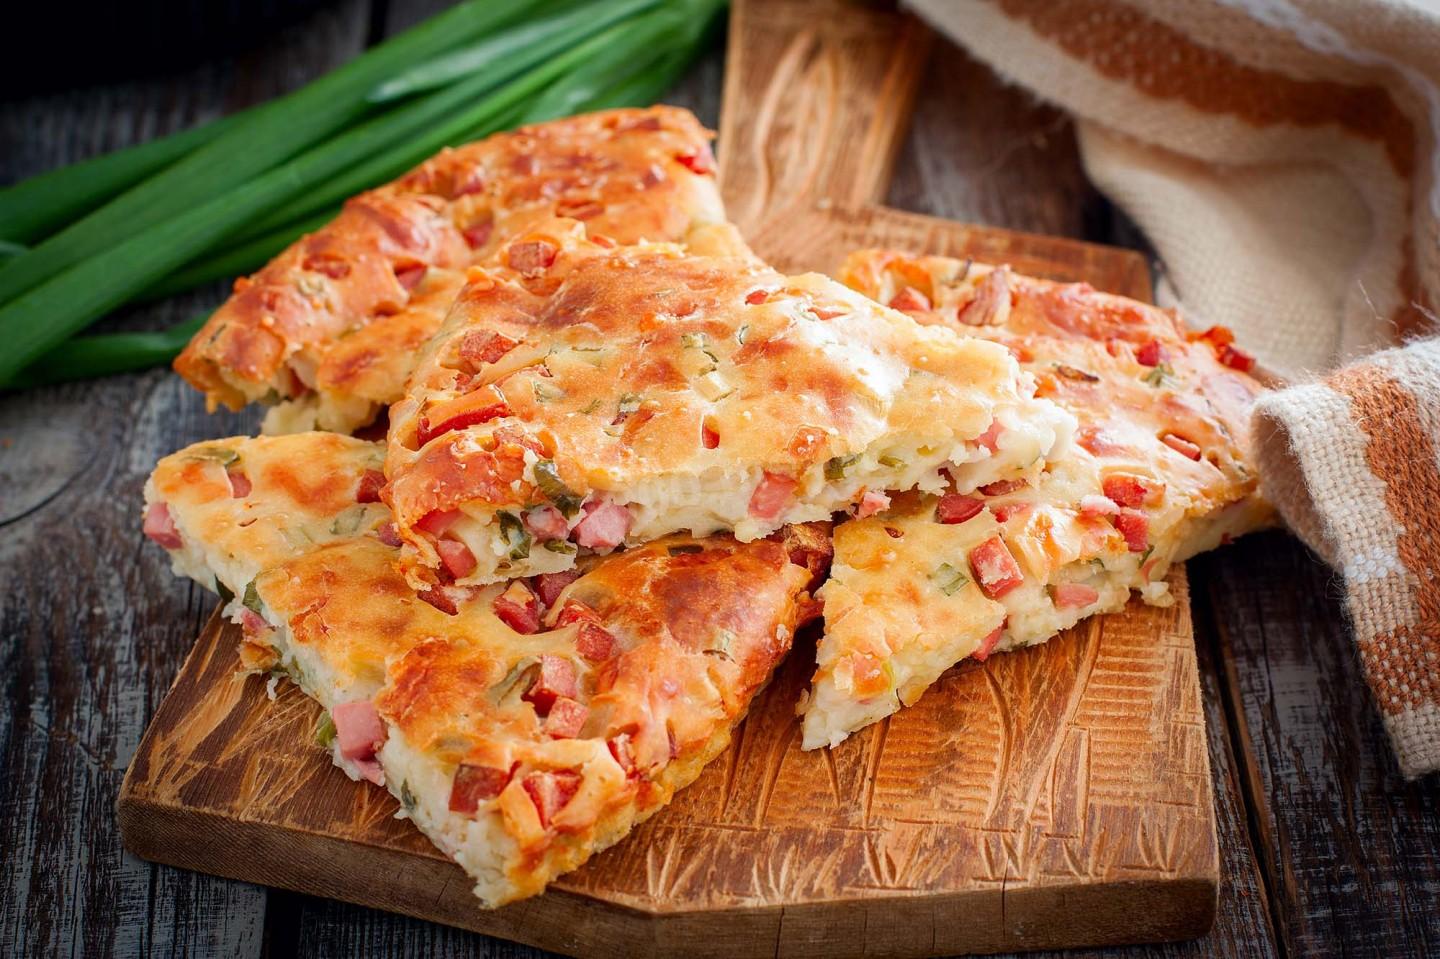 пицца домашняя рецепт приготовления с фото пошагово с колбасой и сыром фото 59